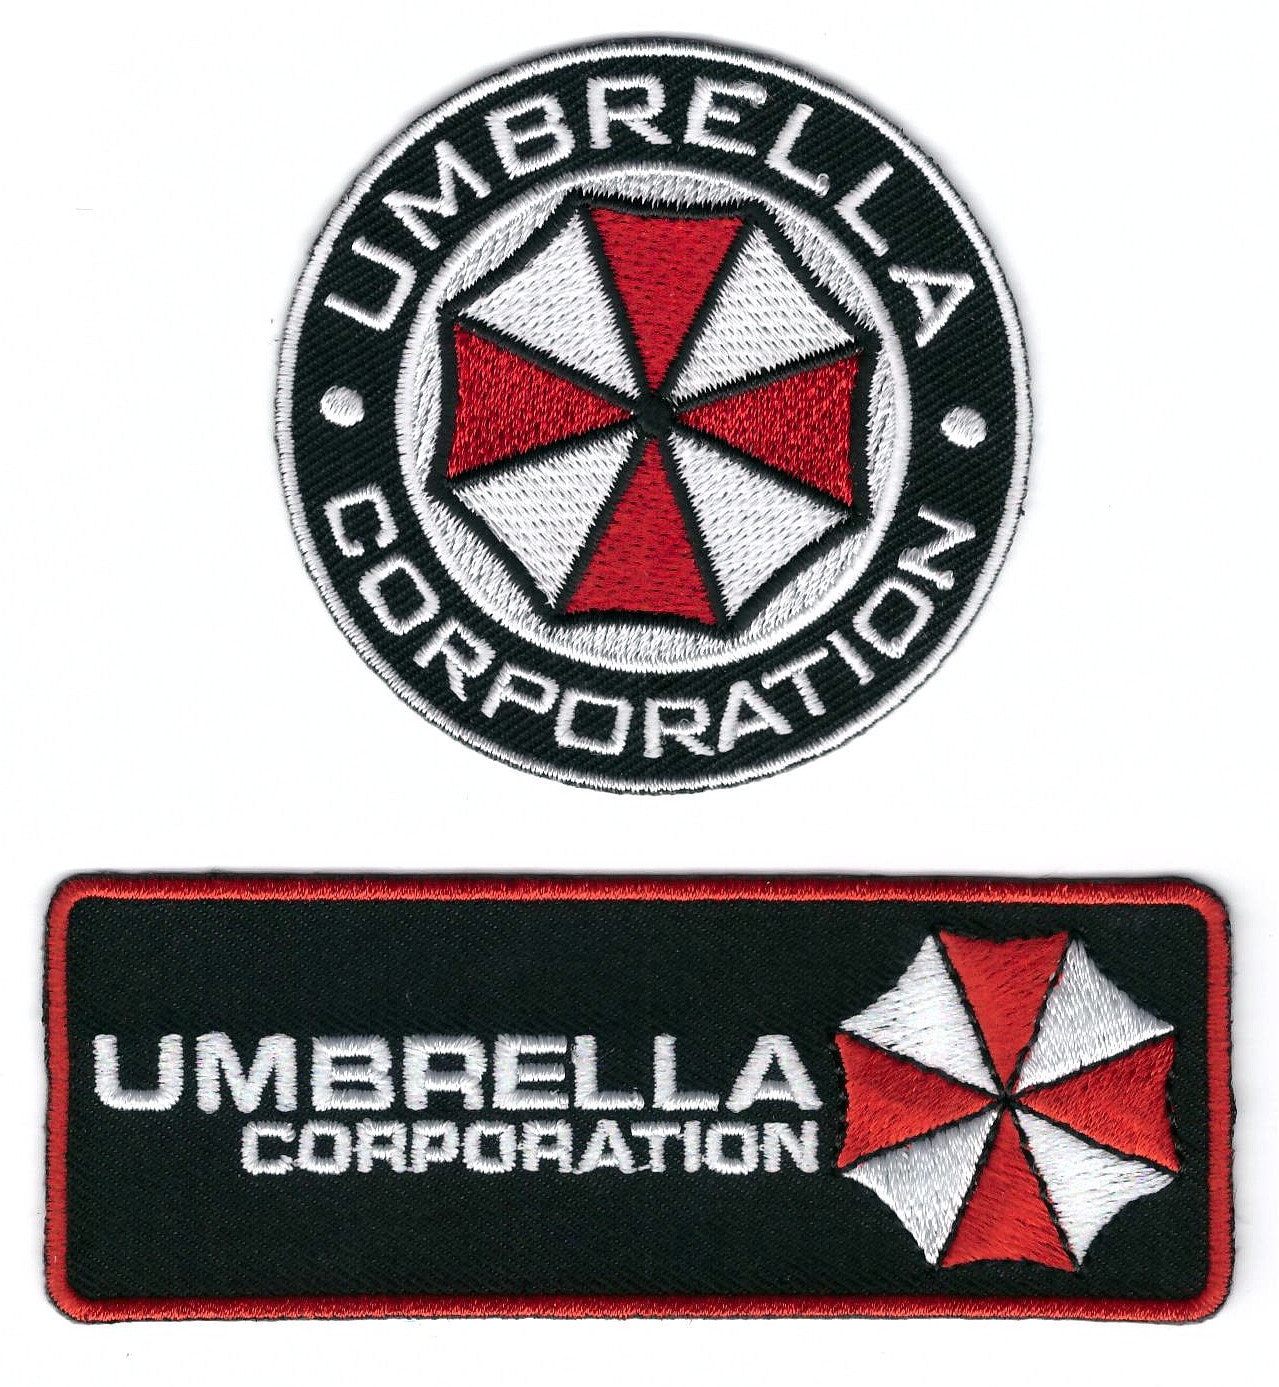 Resident Evil Umbrella Corporation Umbrella S.T.A.R.S. Raccoon Police Metal  Pins